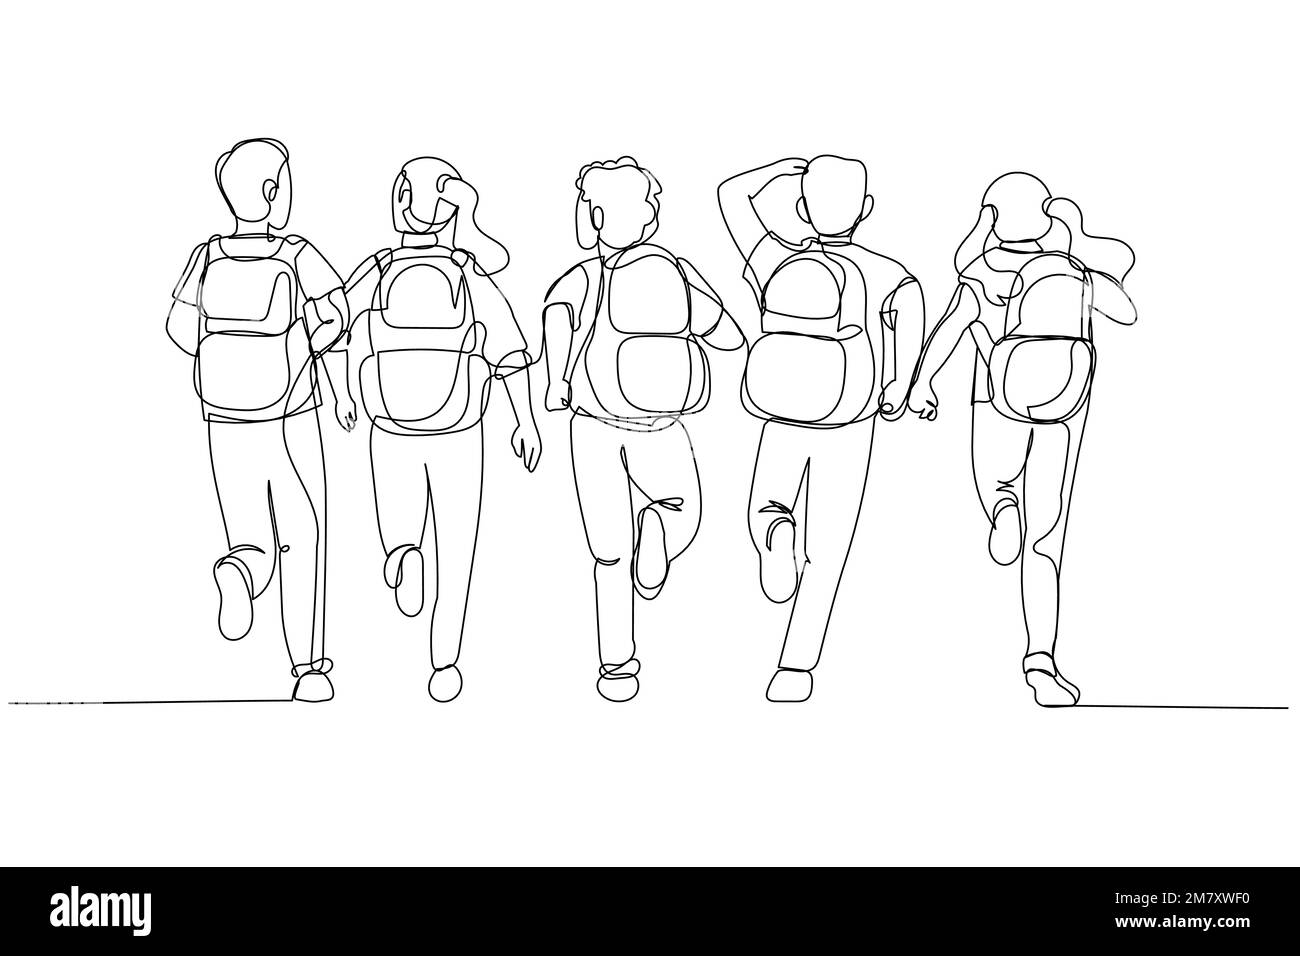 Dessin animé des enfants de l'école avec sac à dos course à l'école. Vue arrière. Style art sur une seule ligne Illustration de Vecteur